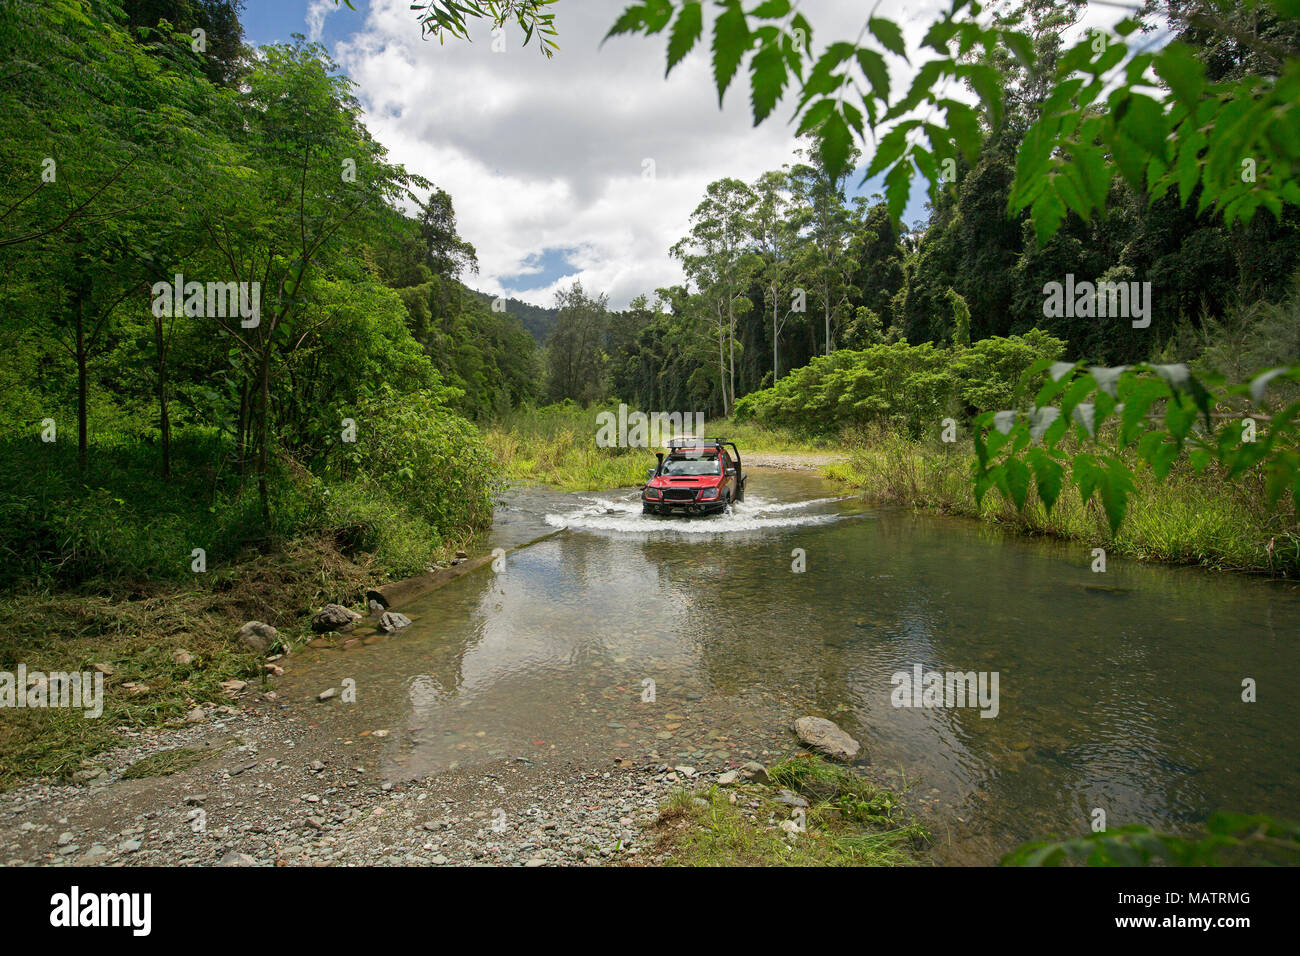 Véhicule à quatre roues motrices rouge crossing creek ourlé à forêts émeraude dans Conondale Queensland Australie Parc National de Banque D'Images